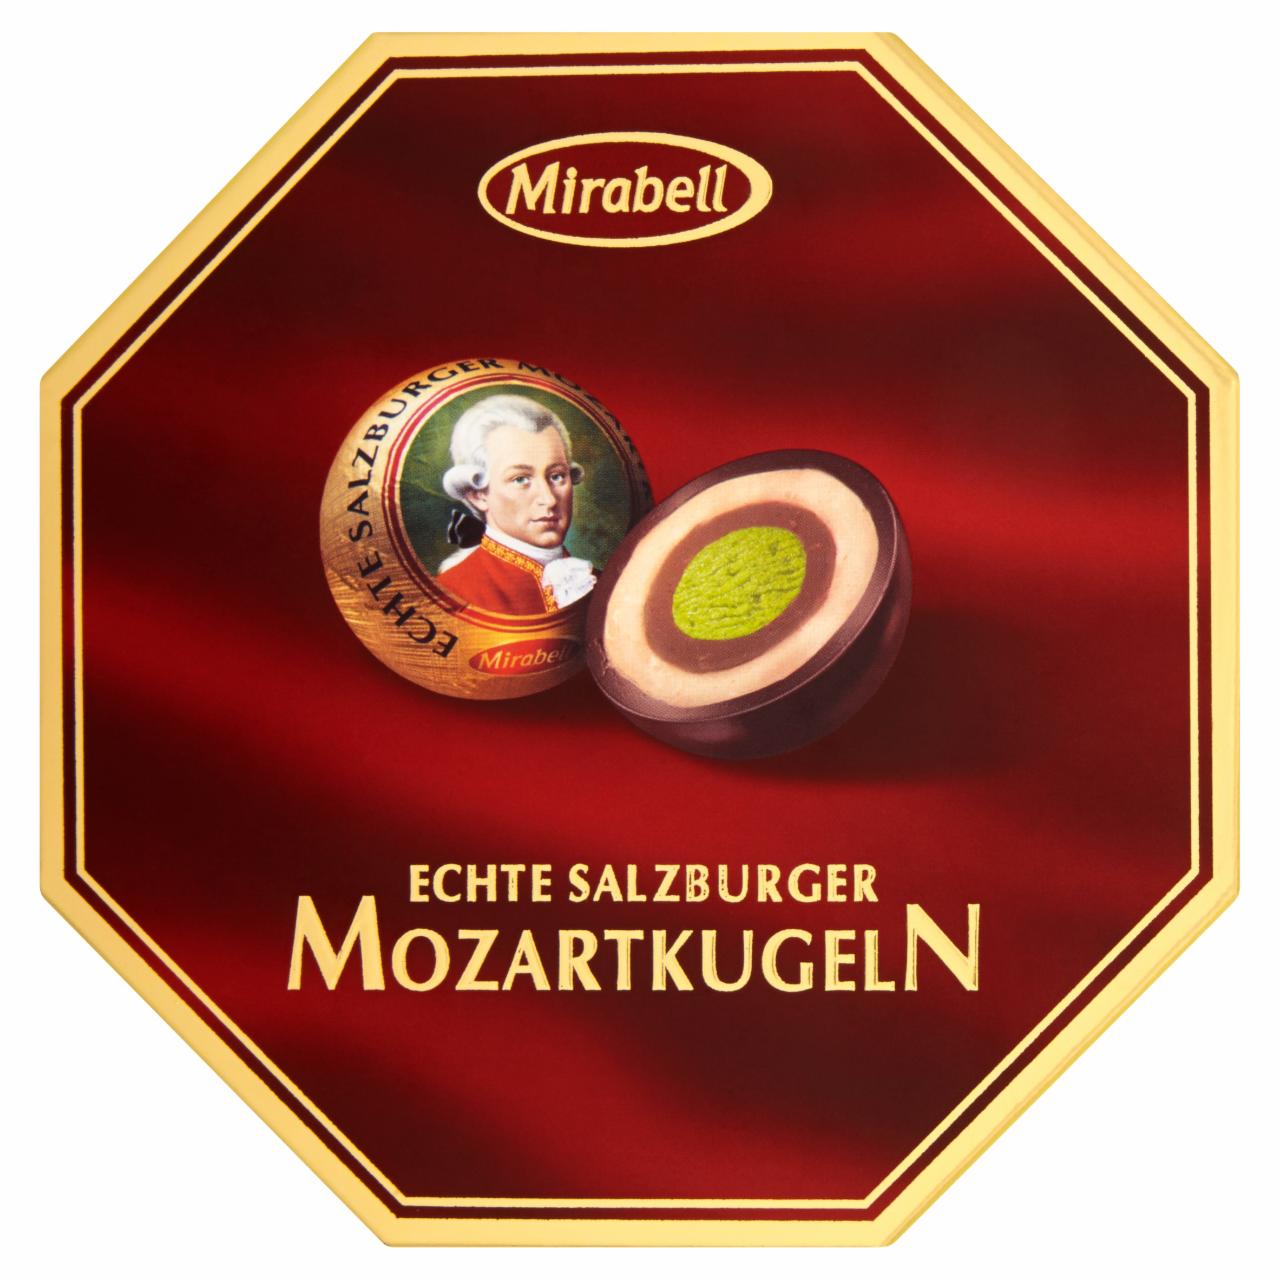 Képek - Mirabell Mozartkugeln étcsokoládé világos és sötét mogyoróskrém és marcipán töltelékkel 100 g